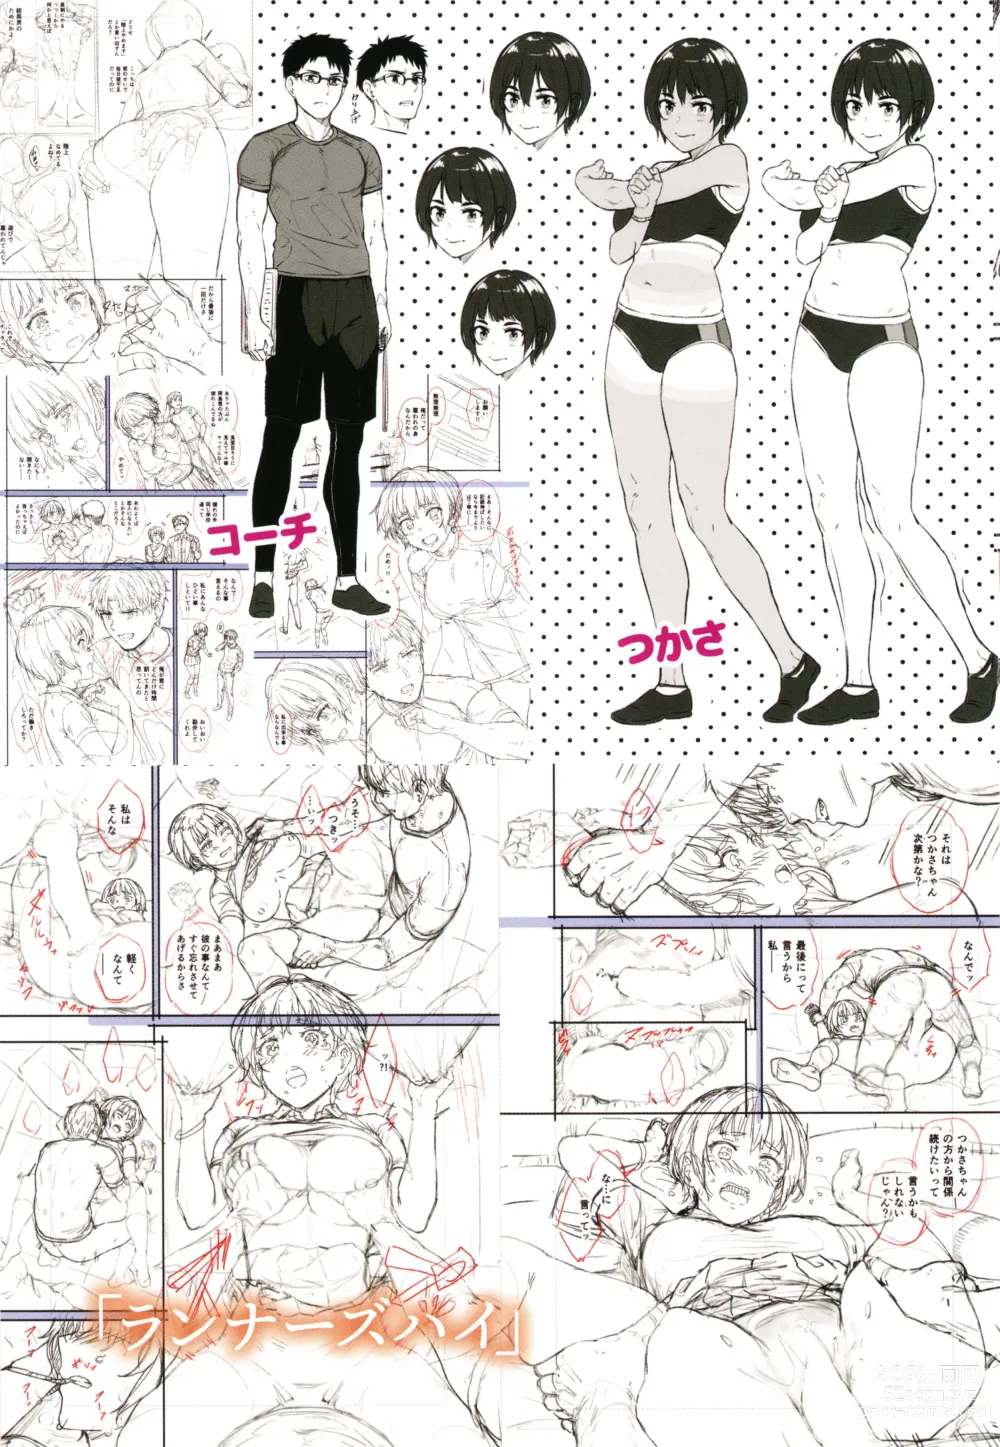 Page 181 of manga Hoshigarikko - Excited Girls Play + Toranoana Gentei Tokuten COMICS ROUGH&CHARACTAR NOTES